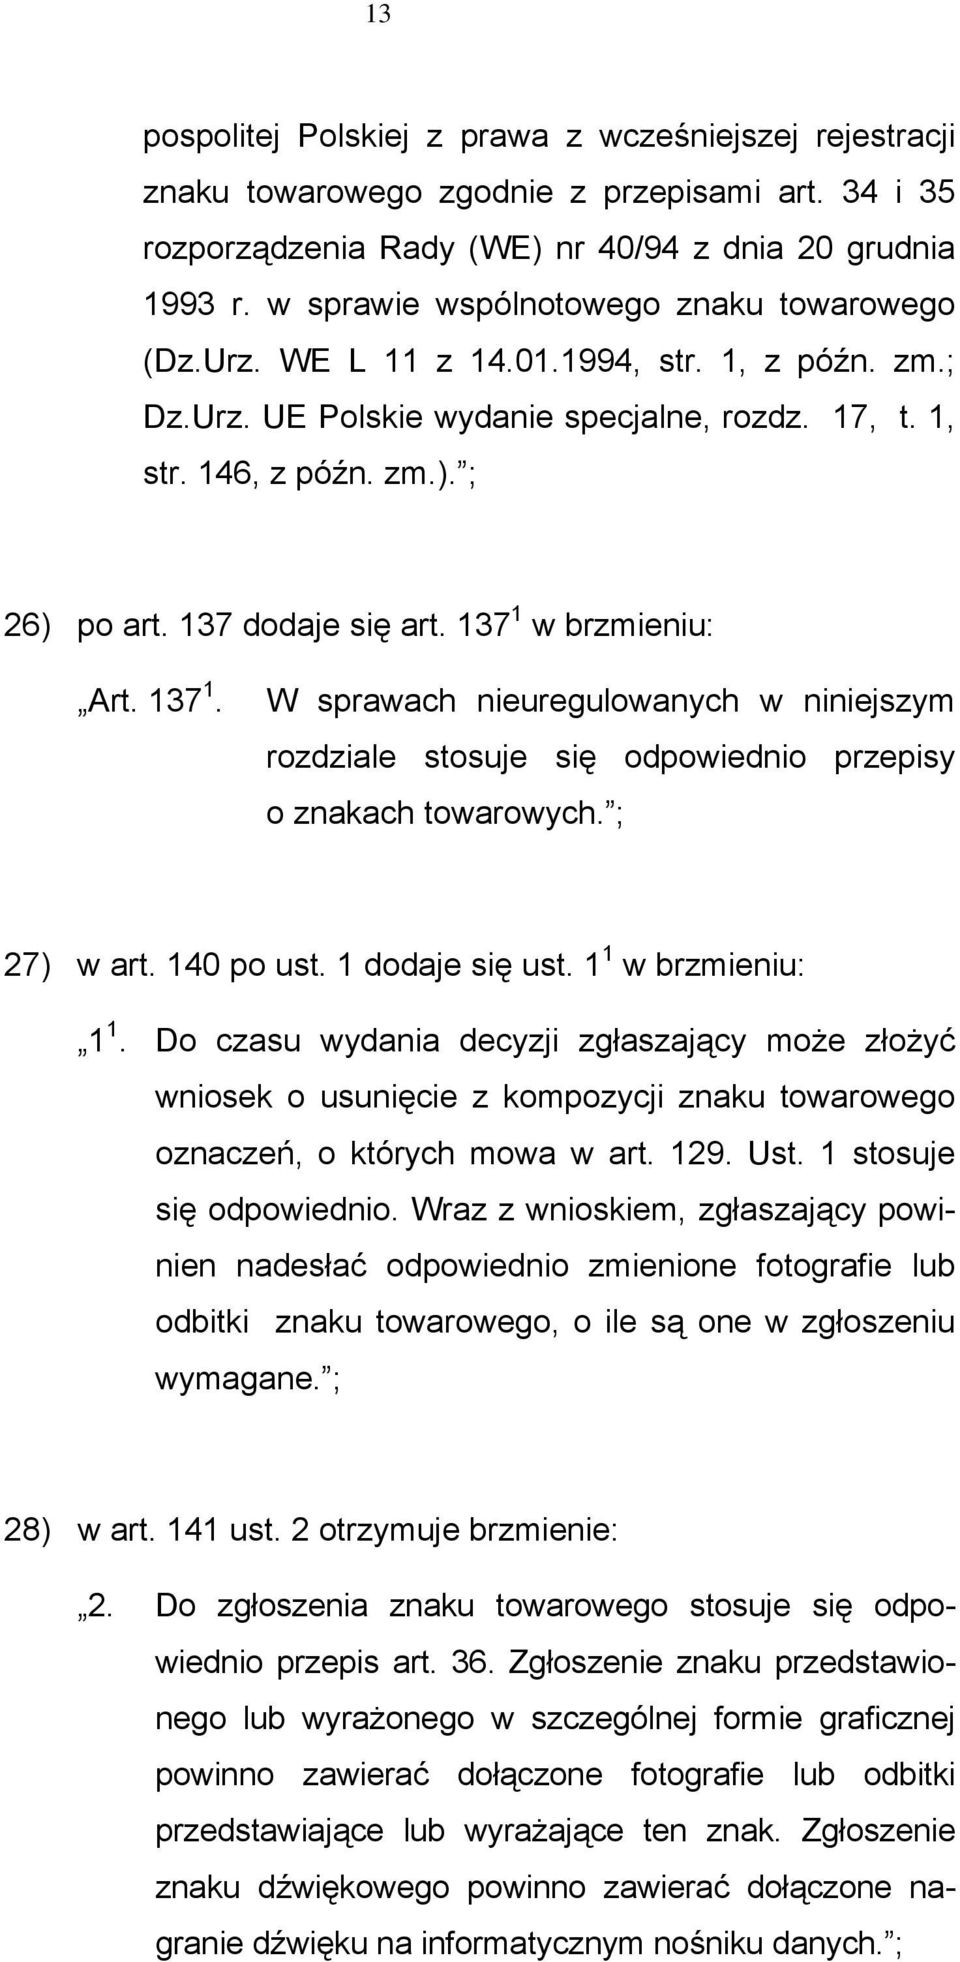 137 dodaje się art. 137 1 w brzmieniu: Art. 137 1. W sprawach nieuregulowanych w niniejszym rozdziale stosuje się odpowiednio przepisy o znakach towarowych. ; 27) w art. 140 po ust. 1 dodaje się ust.